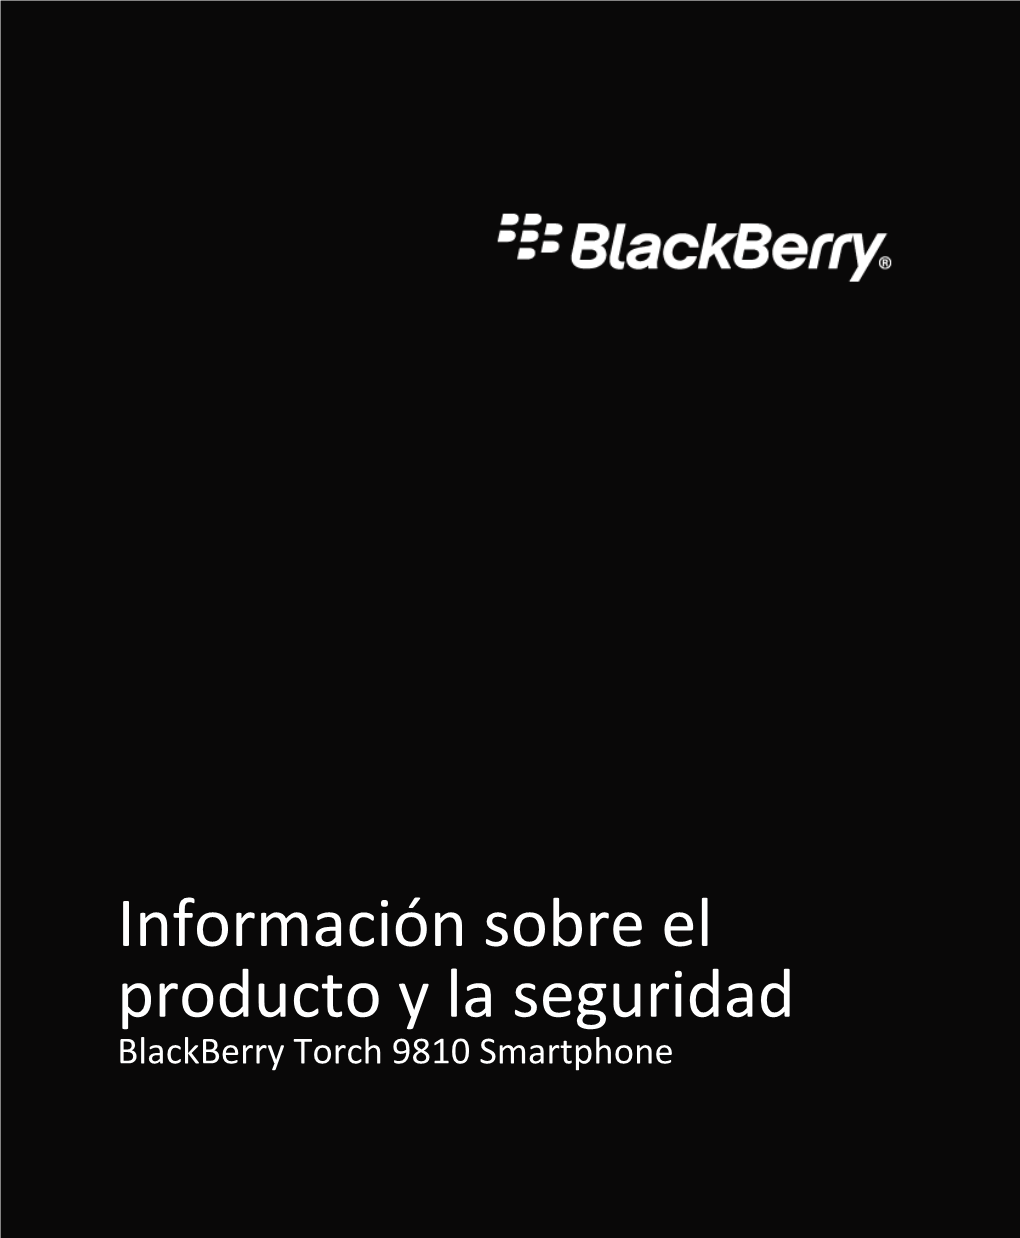 Blackberry Torch 9810 Smartphone %"$!)'!#'%+!"%*)!-&!*)"&)%)%*"%*""%*")&")&%*")#%')!1 MAT-38755-005